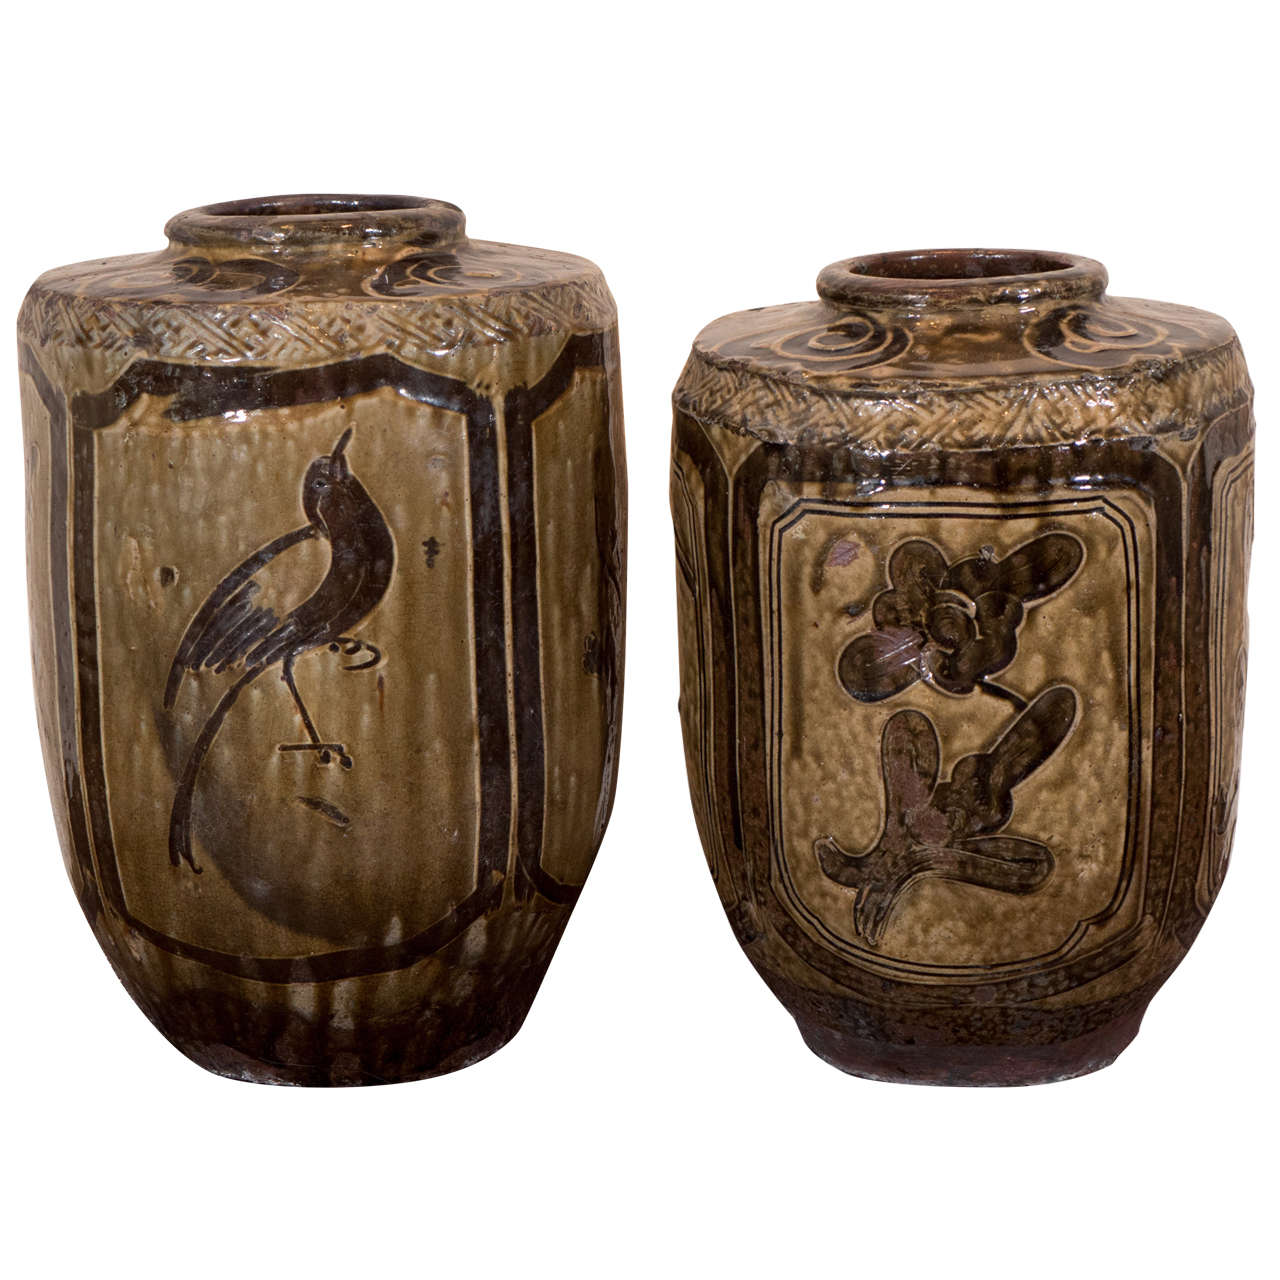 Antique Ceramic Food Jars